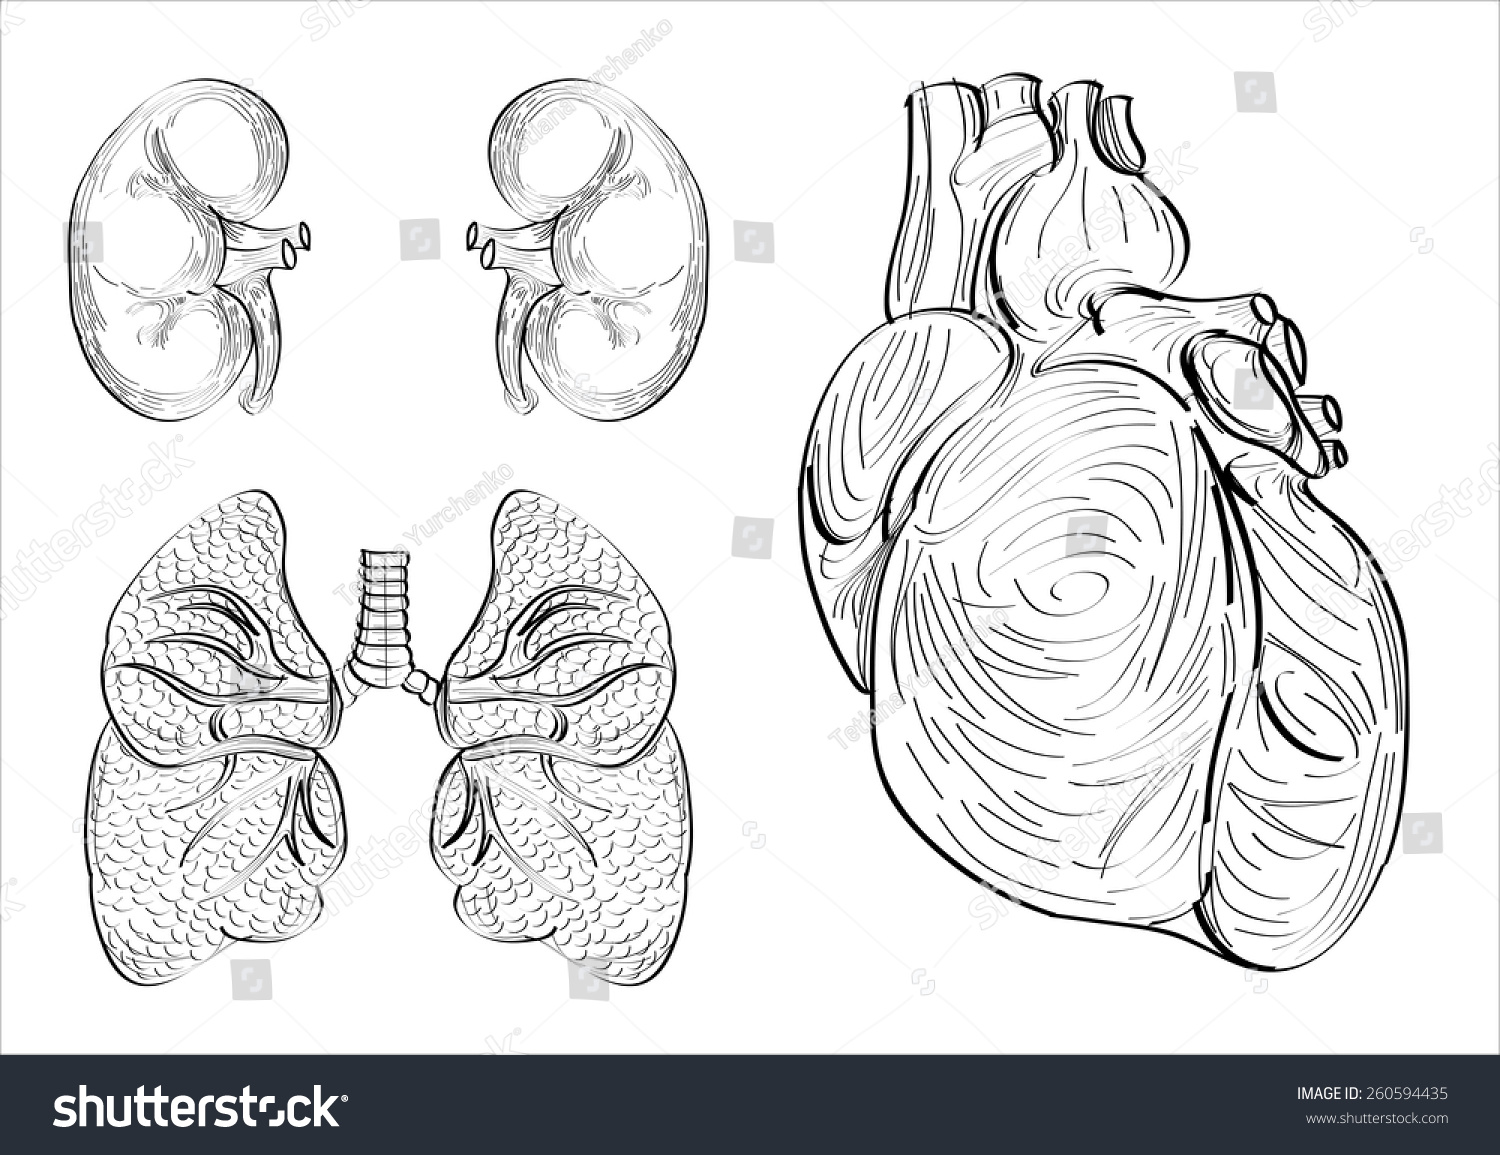 Рисованное орган сердце и легкие